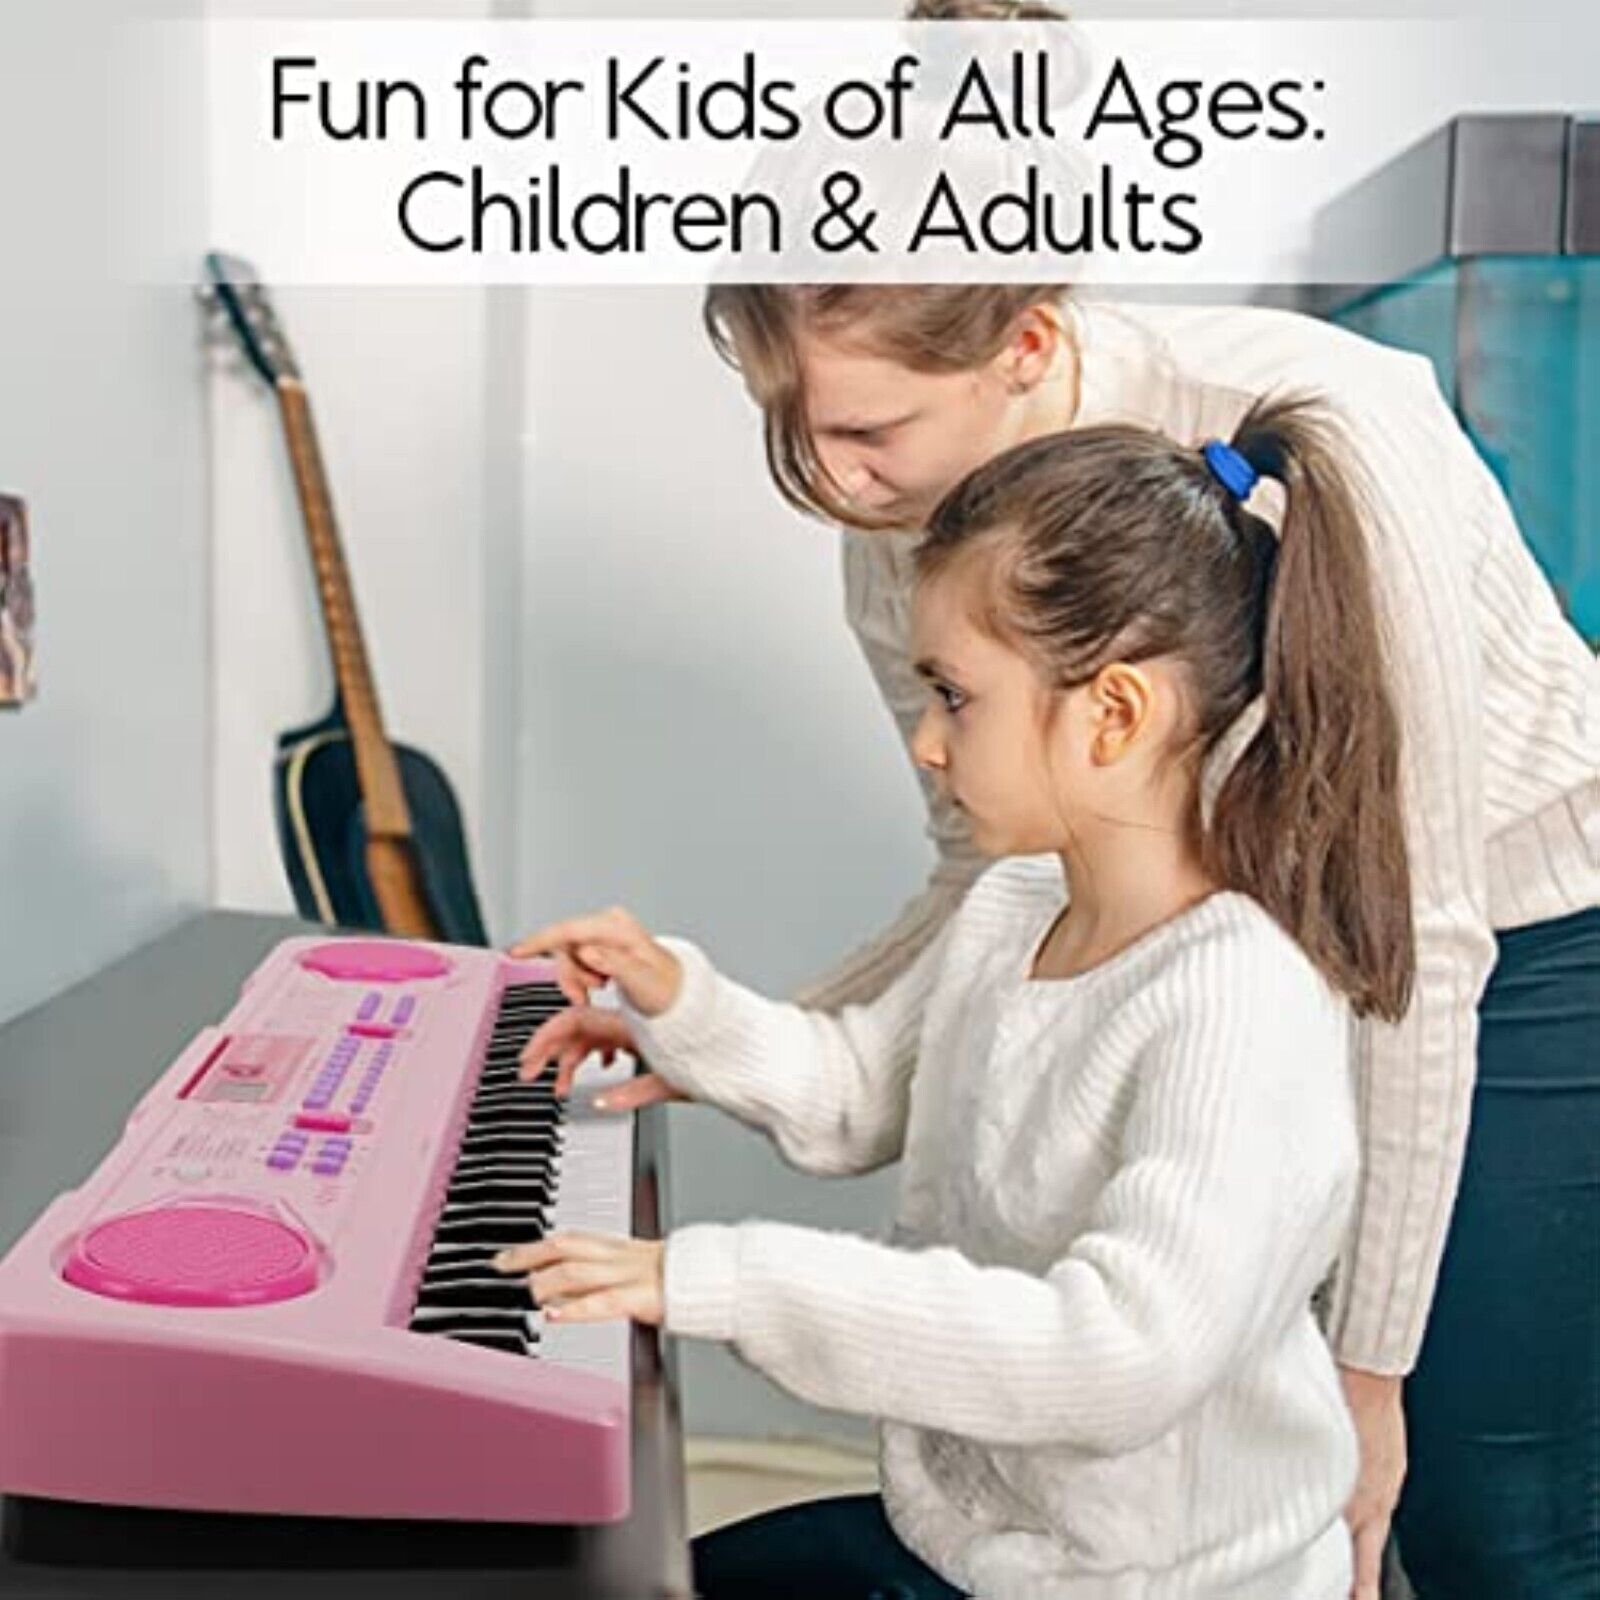 Innedu Digital Kinder Piano Keyboard,Brighten Teaching 61 Tasten Piano Spielzeug